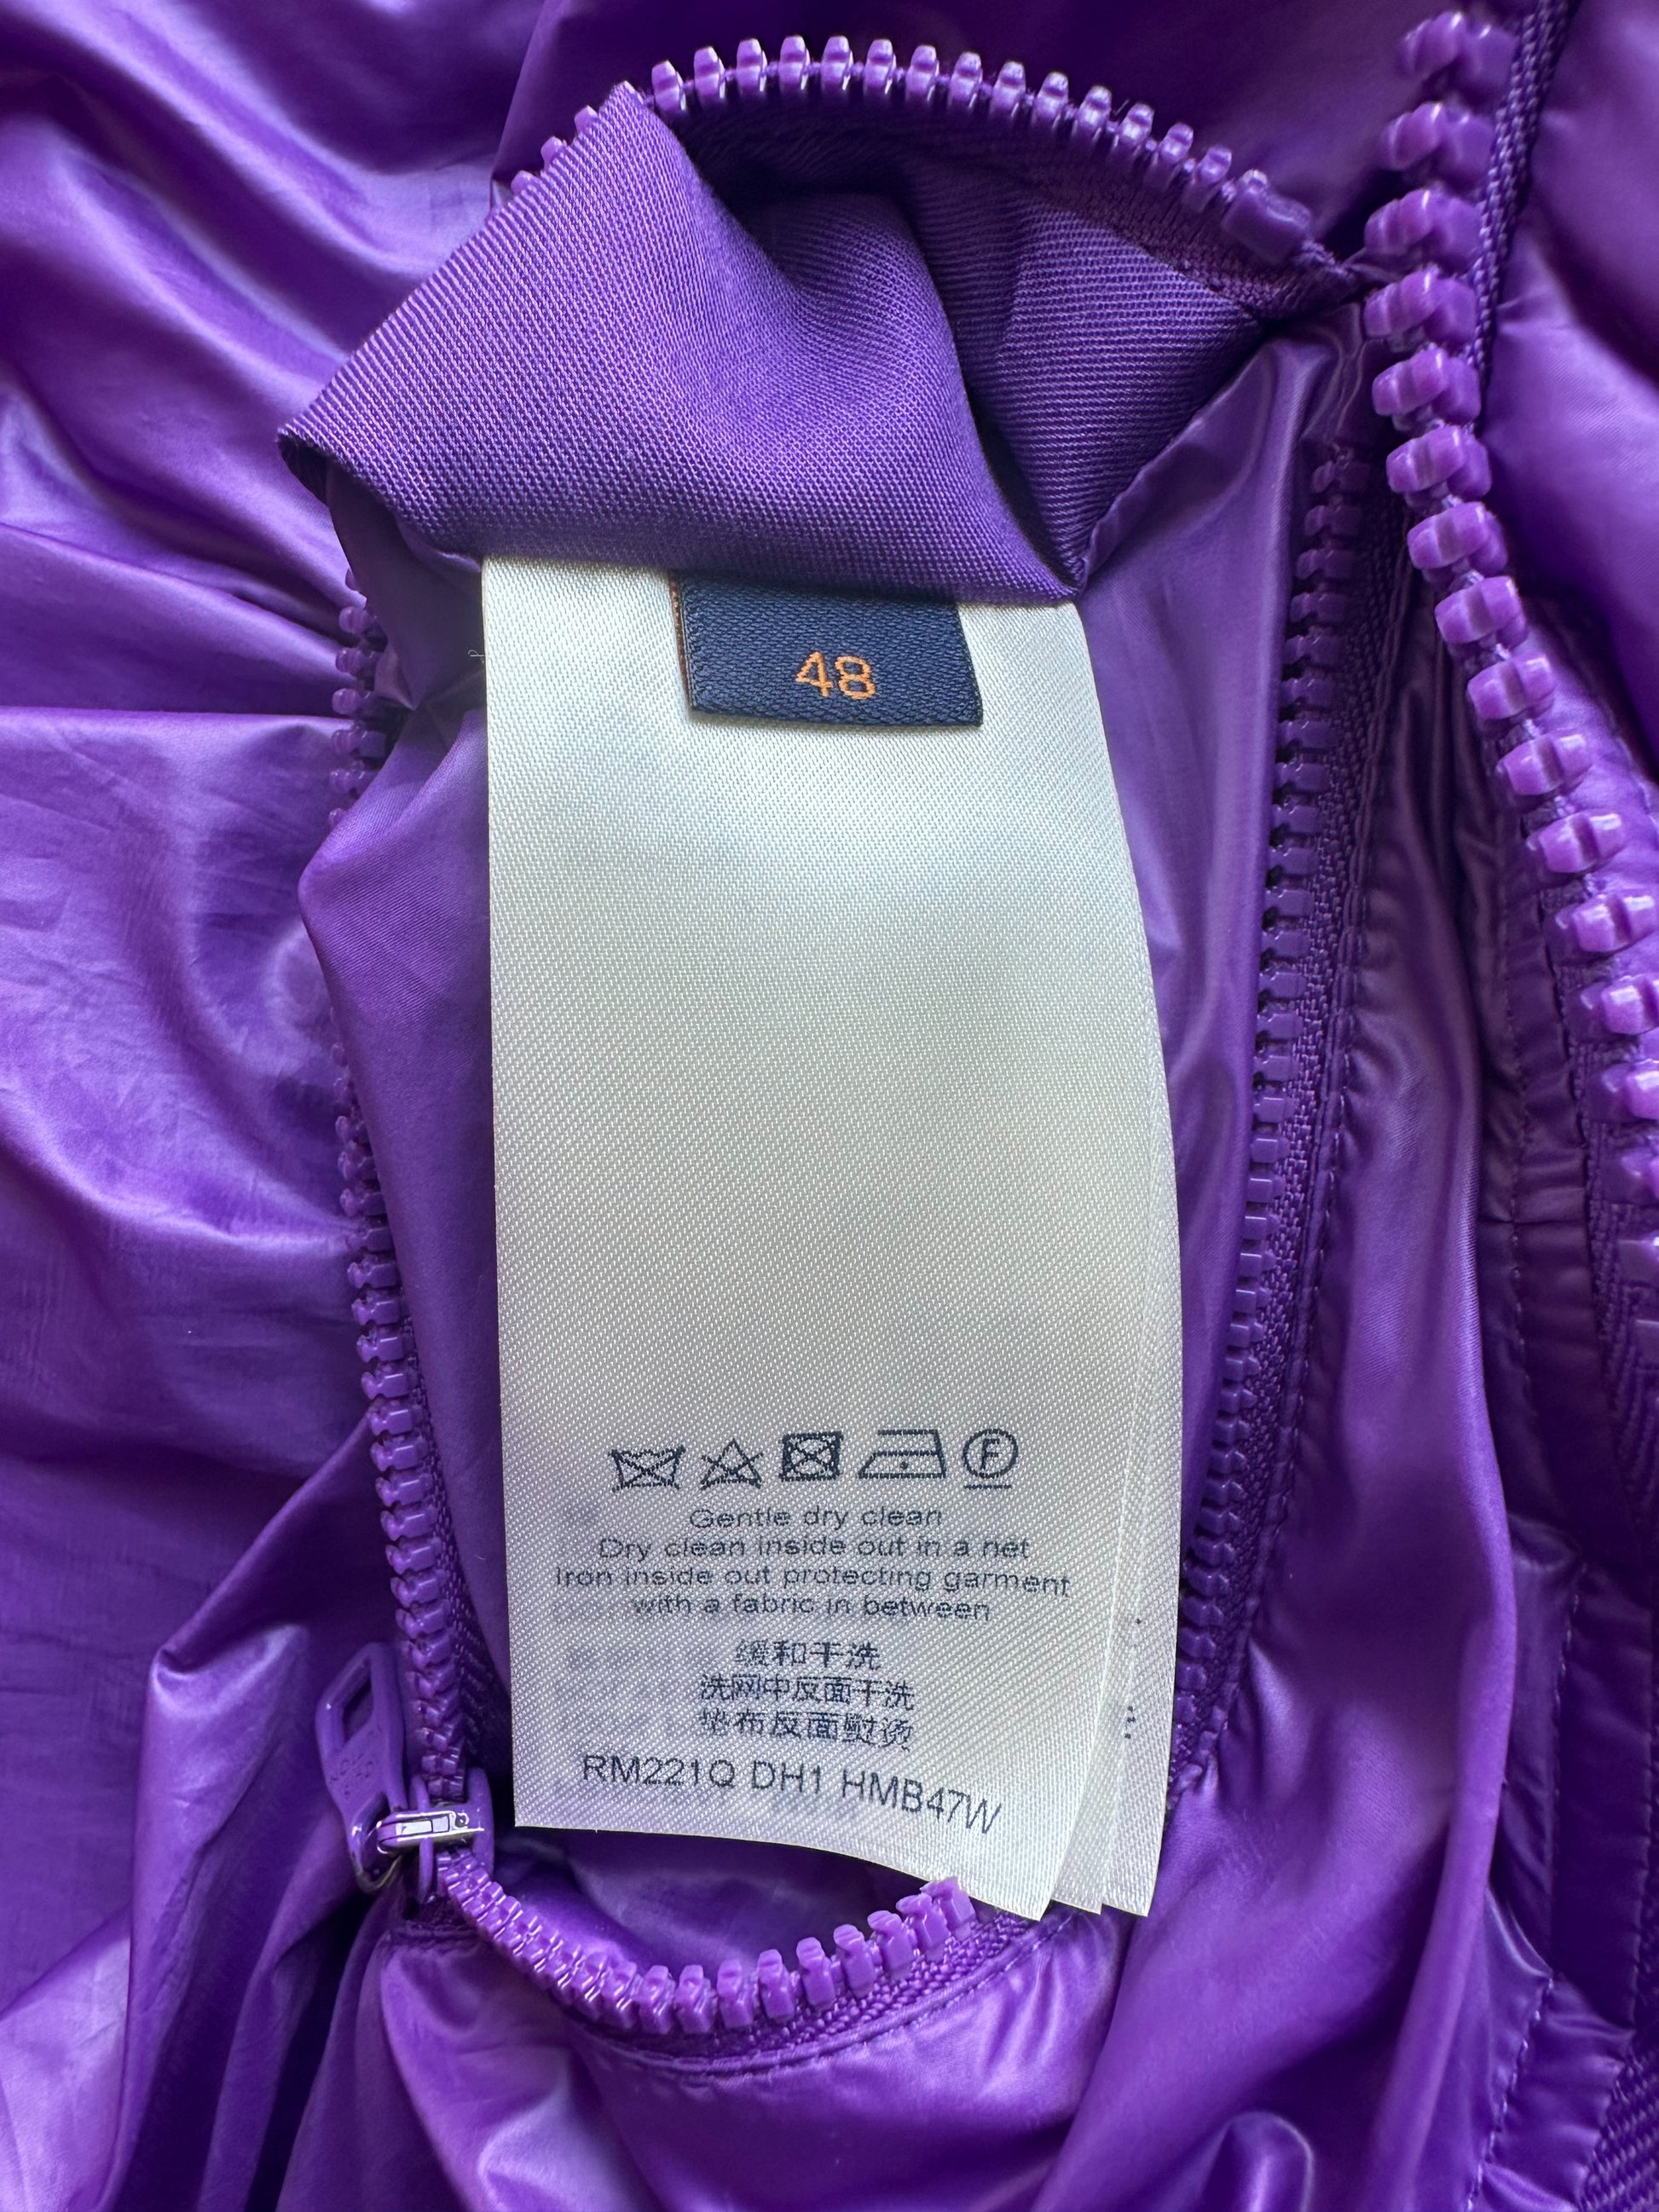 Louis Vuitton Purple Flower Monogram Puffer Jacket – Savonches